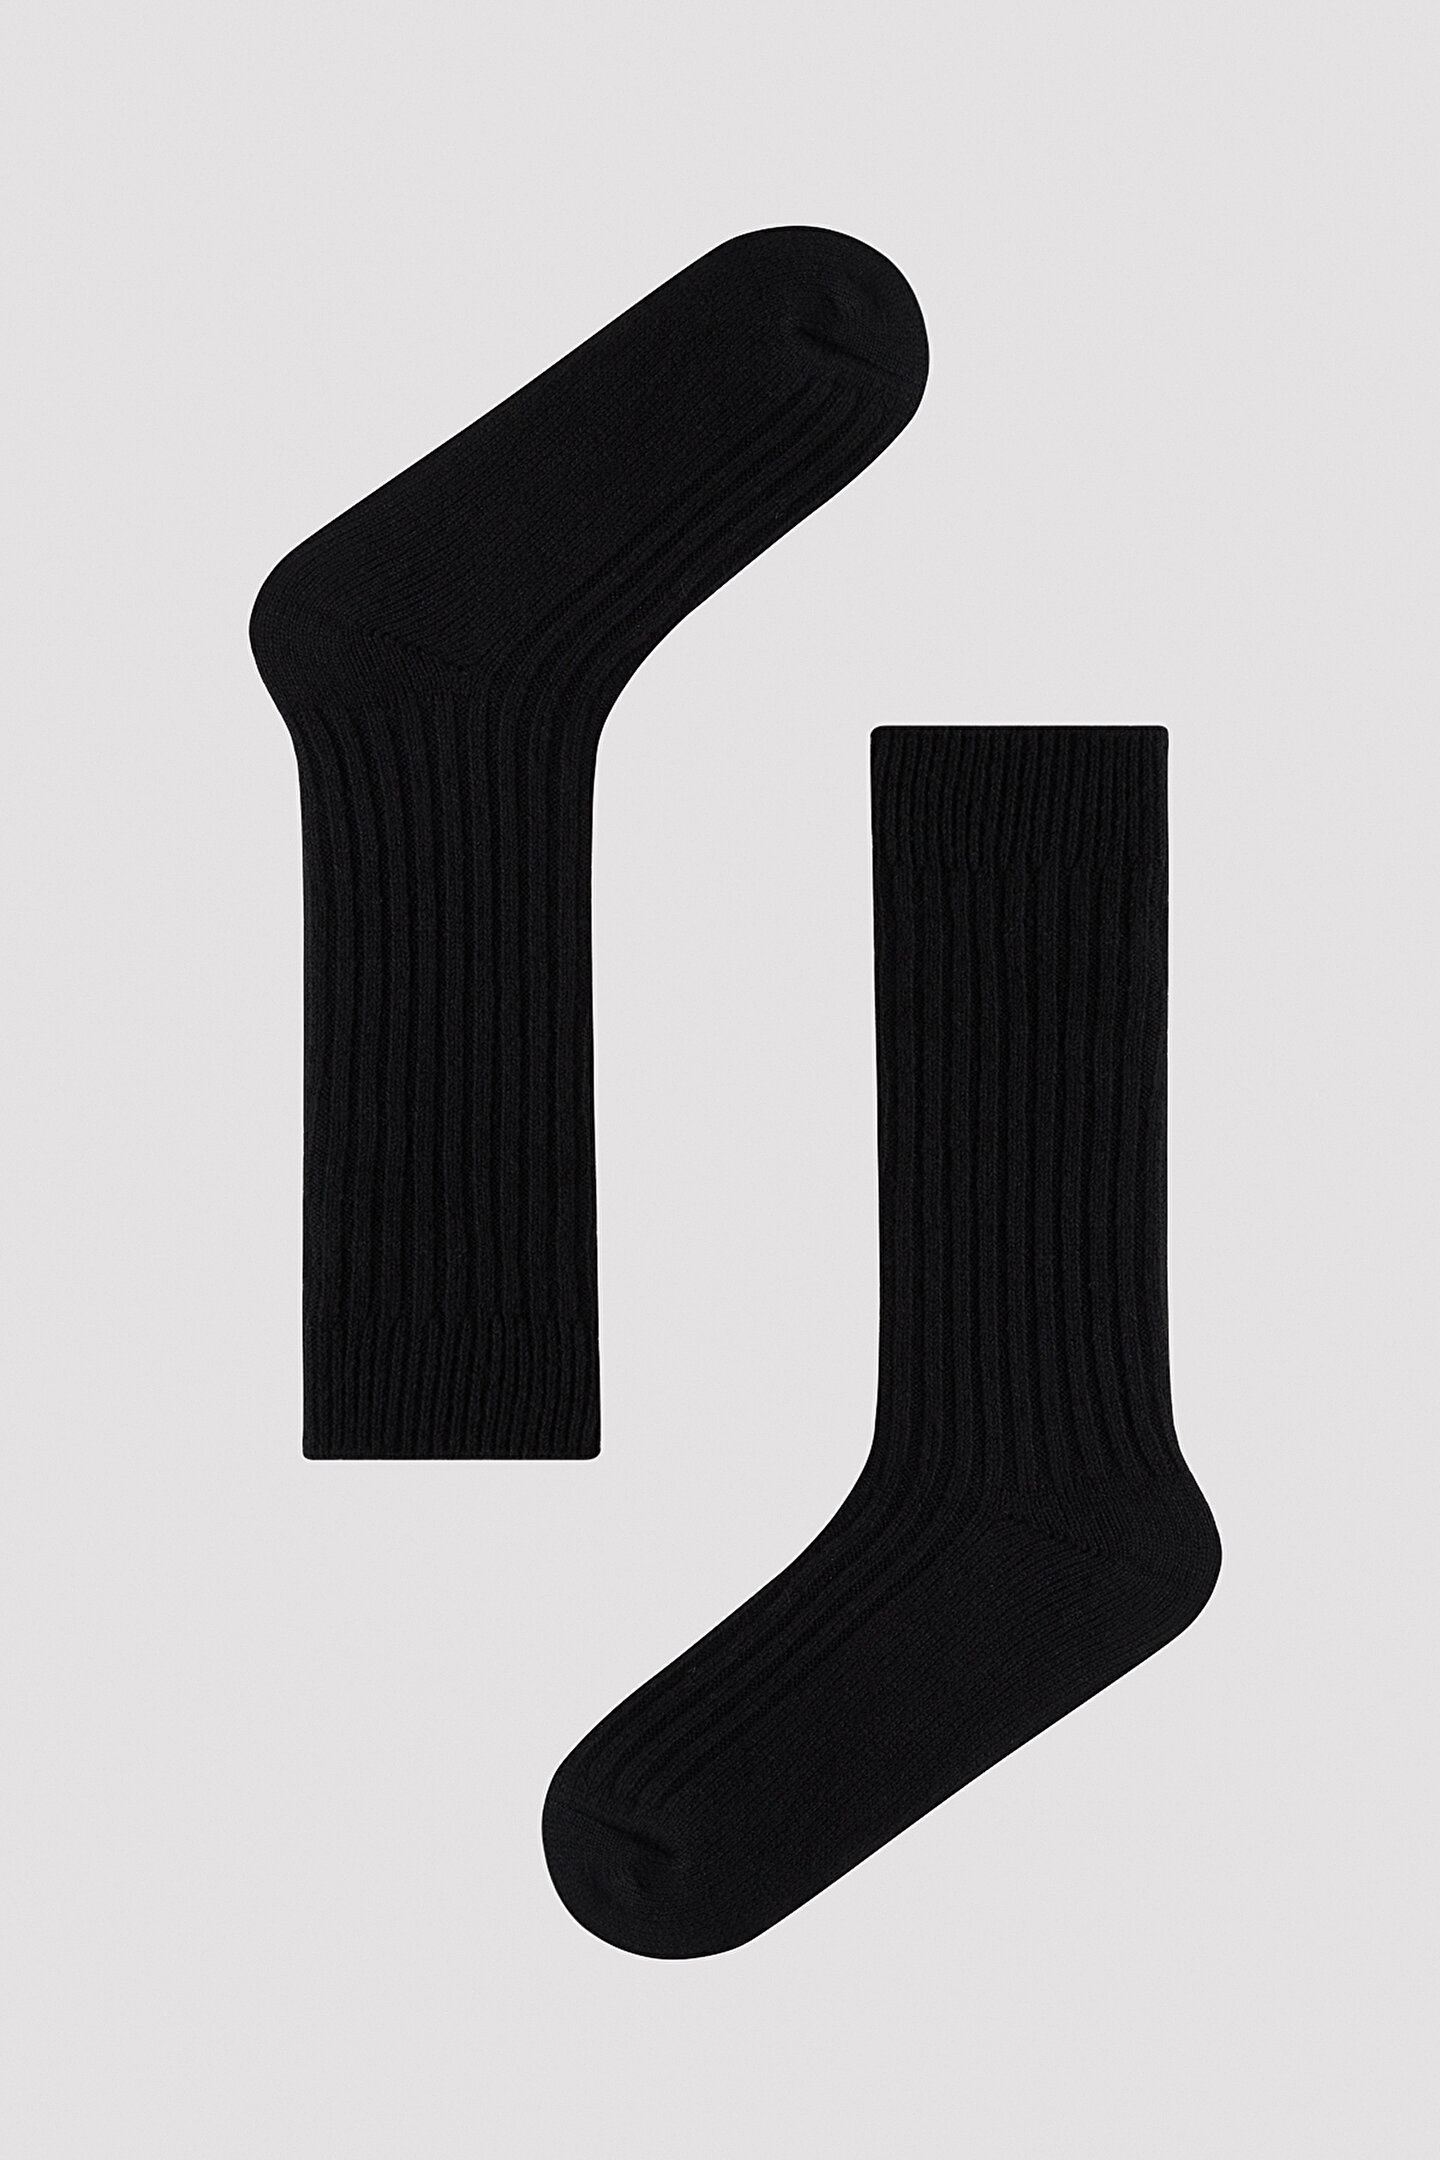 Vertical Rib Siyah Soket Çorap - 1